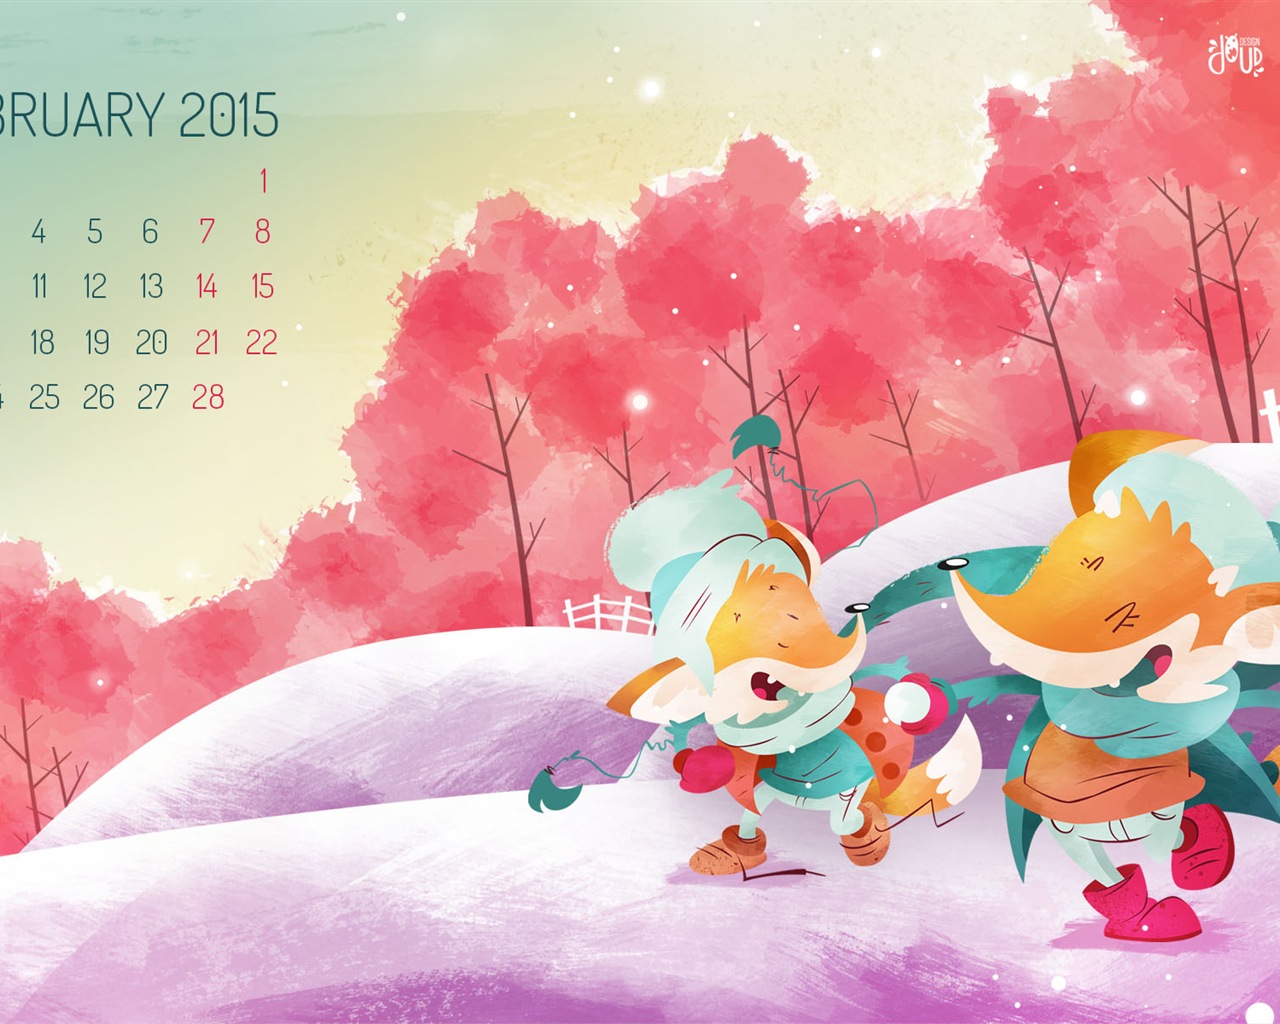 February 2015 Calendar wallpaper (2) #1 - 1280x1024